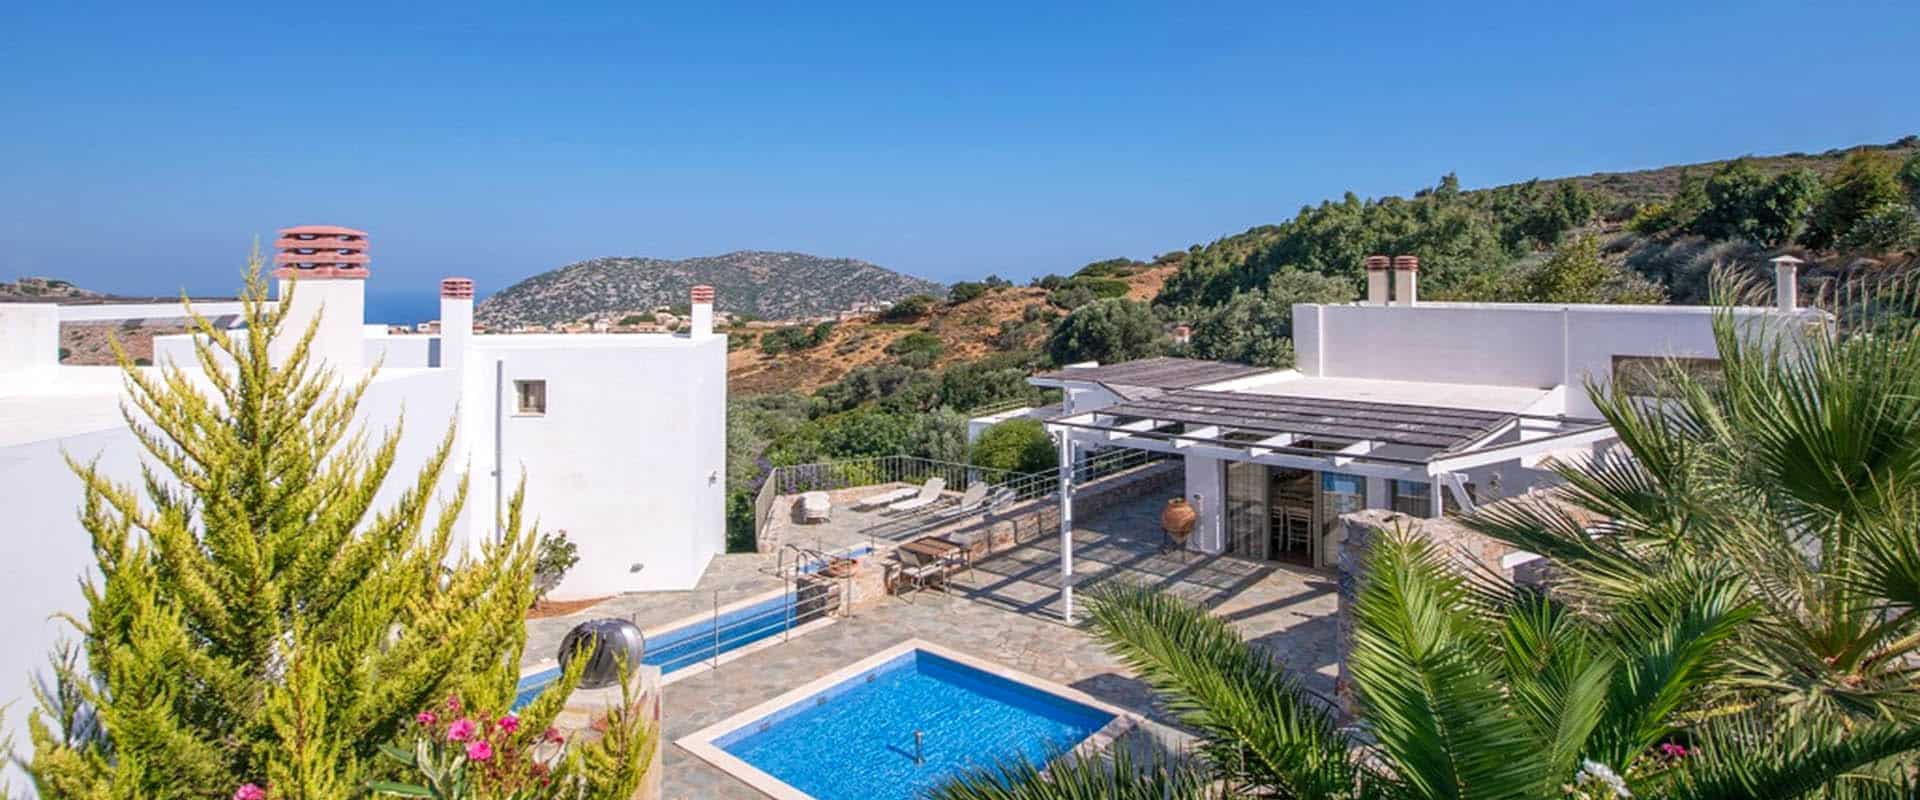 ekoturystyka hotel wakacyjny turystyka zrównoważona Kreta Grecja